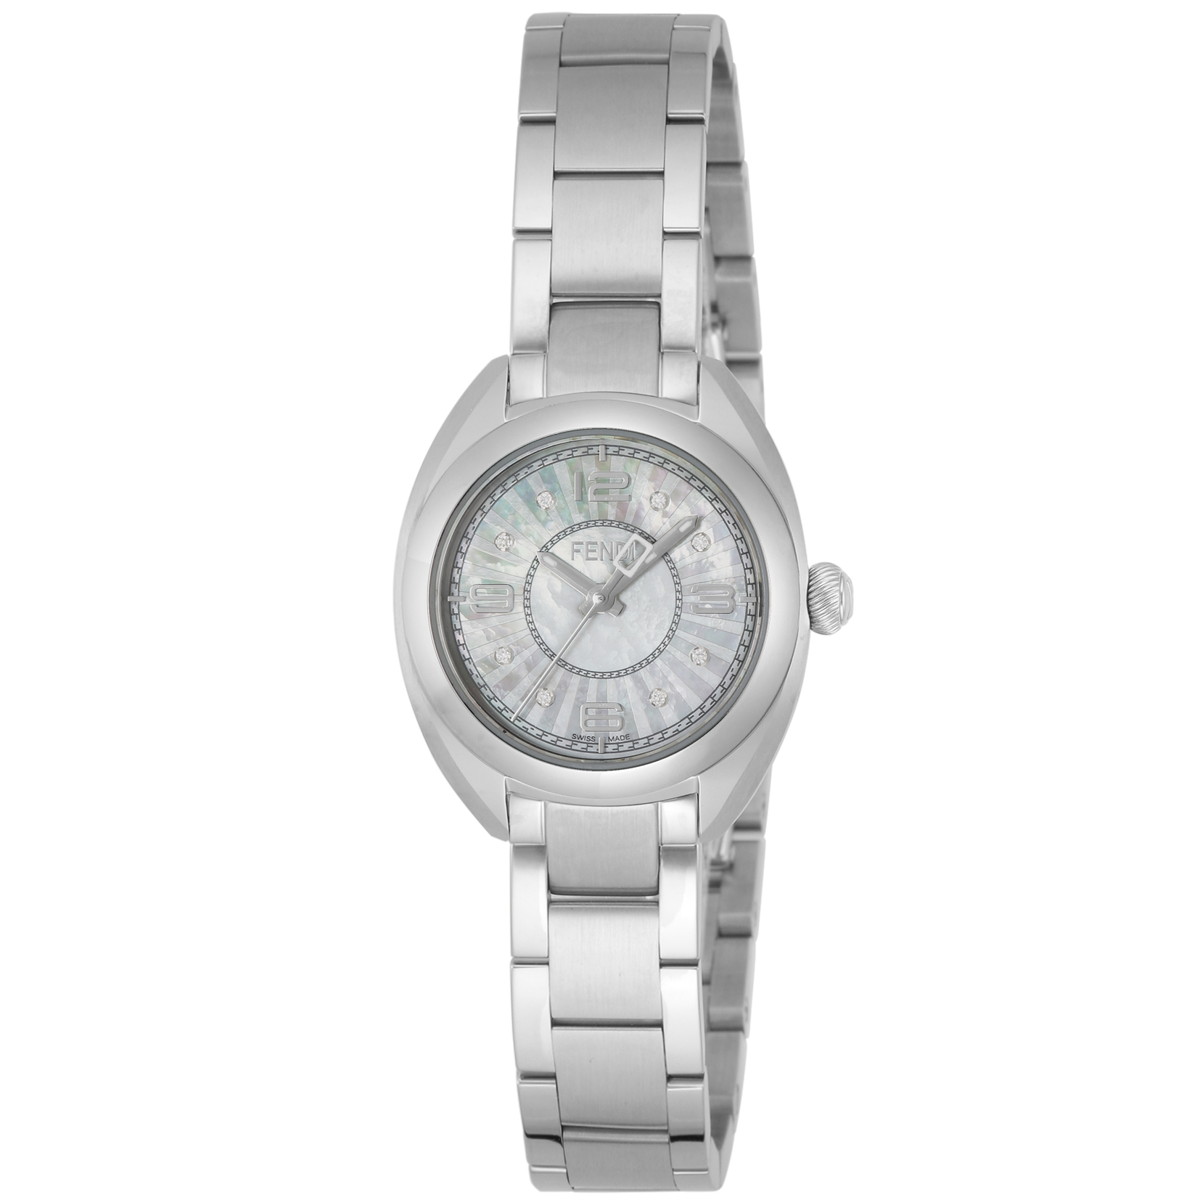 FENDI 腕時計 レディース ホワイト-